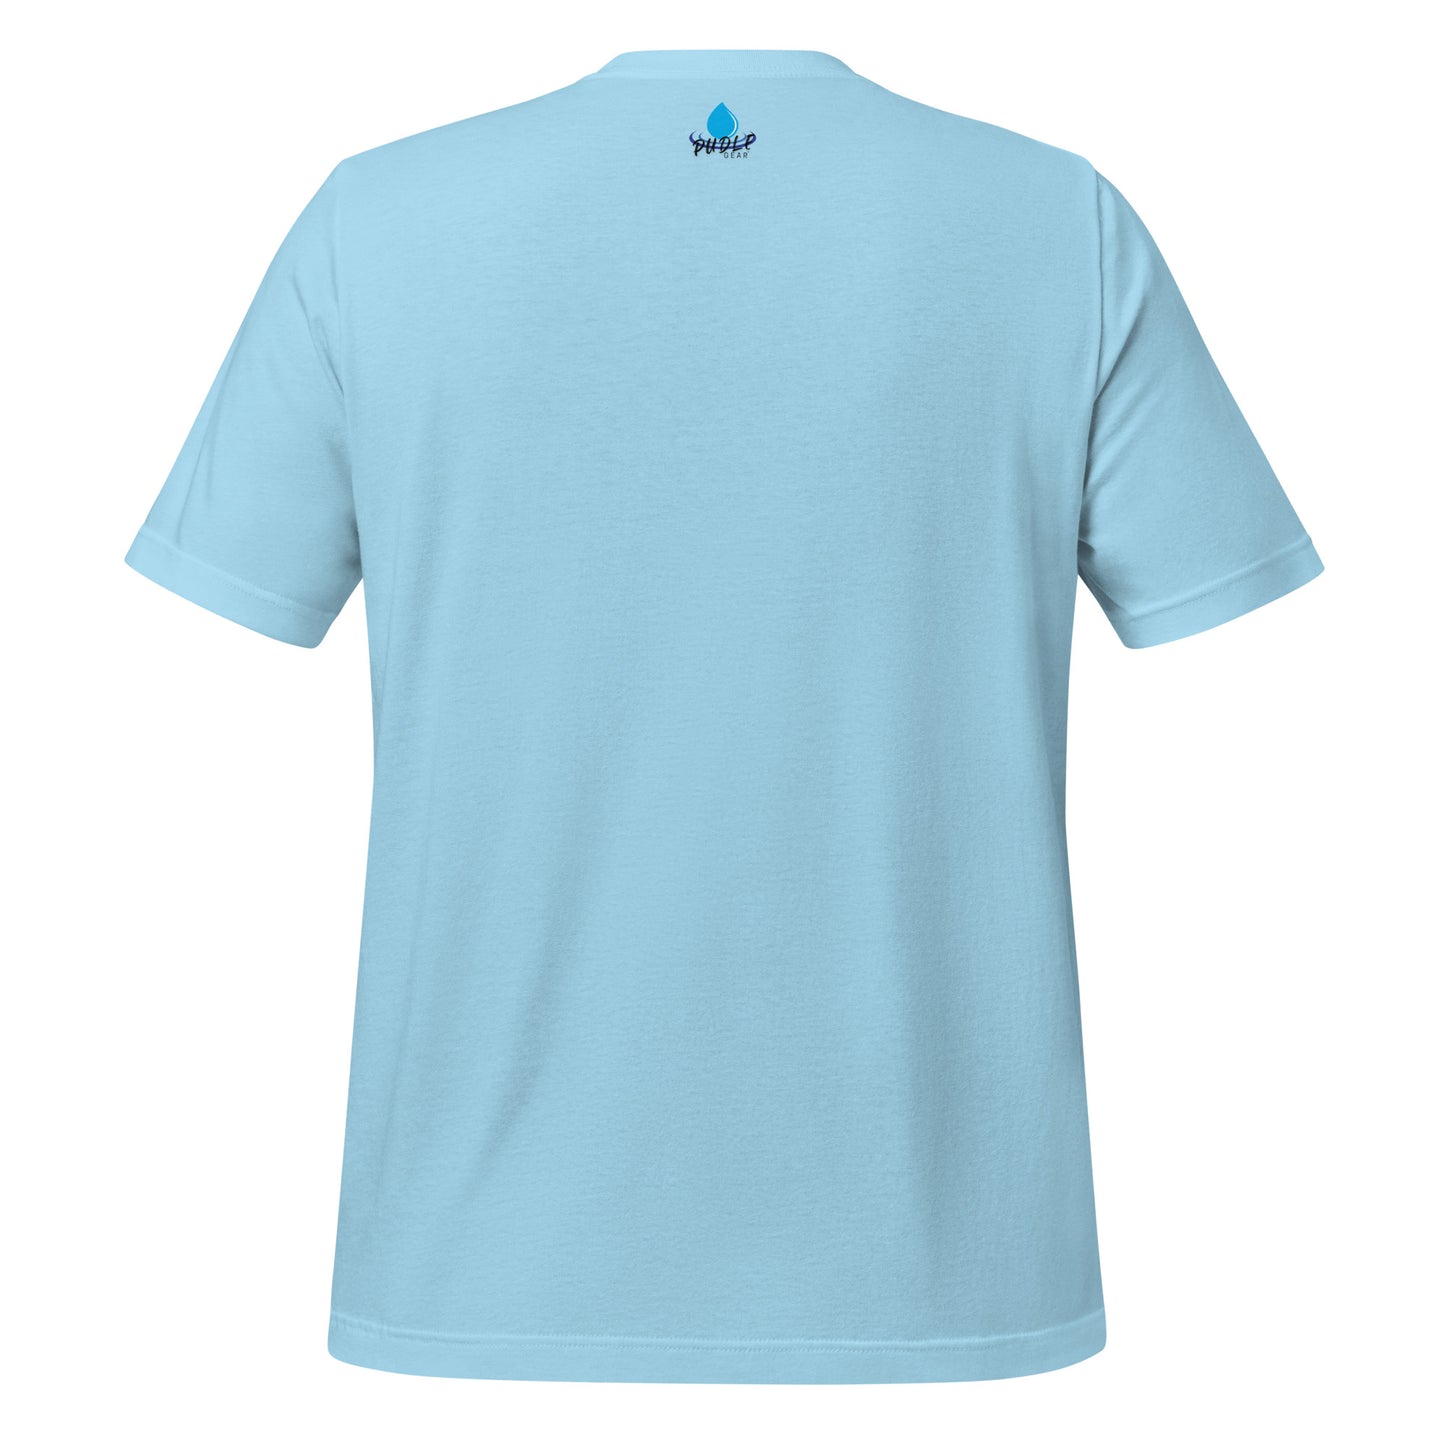 Cool Stormwater Geek (dark font) - Unisex t-shirt